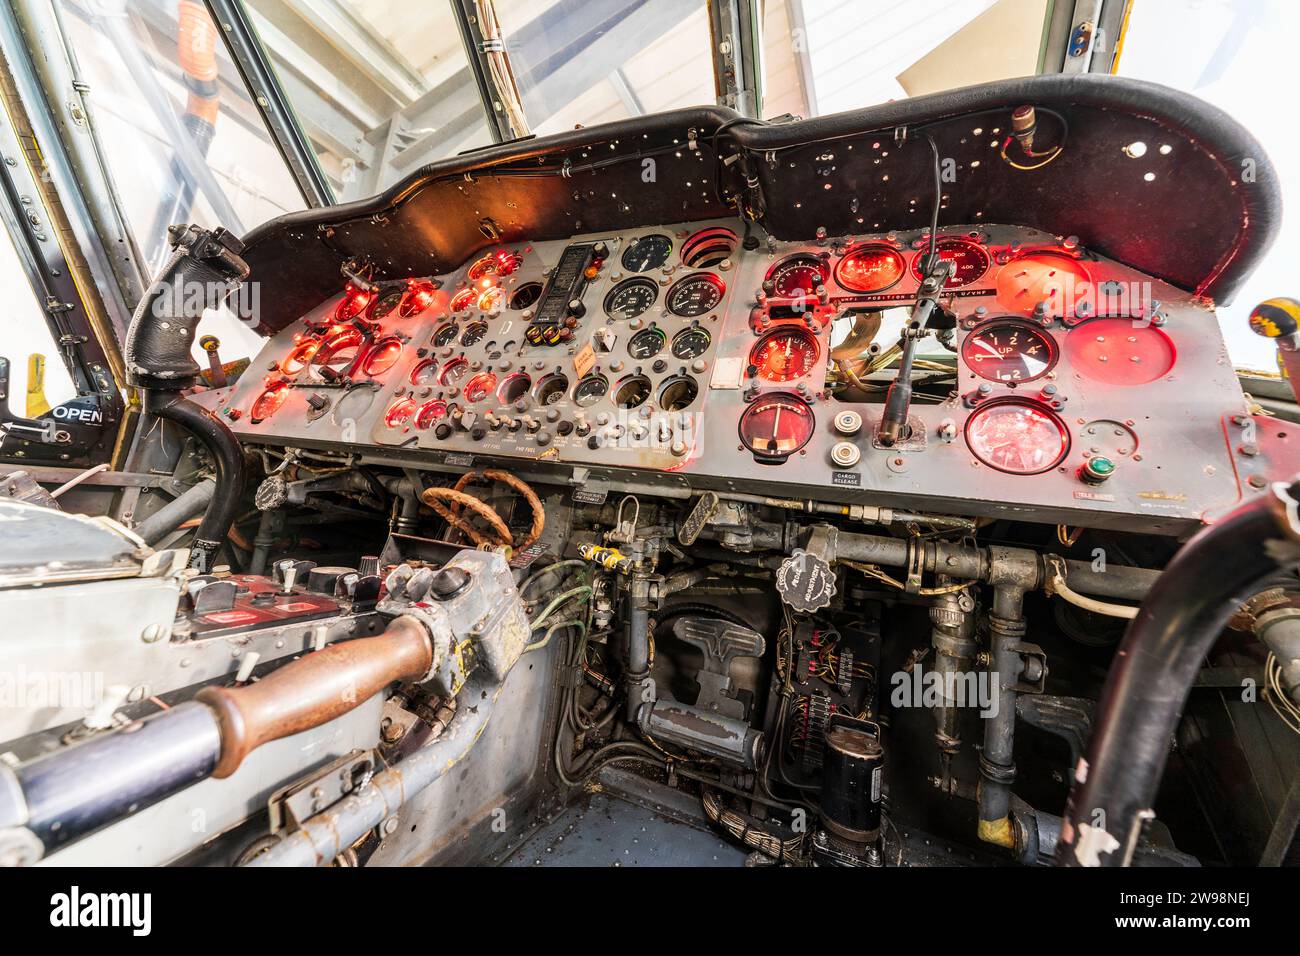 Interno di un elicottero Westland Wessex dismesso che mostra i pannelli di controllo di volo sia per il pilota che per il navigatore. Comandi di volo illuminati. Foto Stock